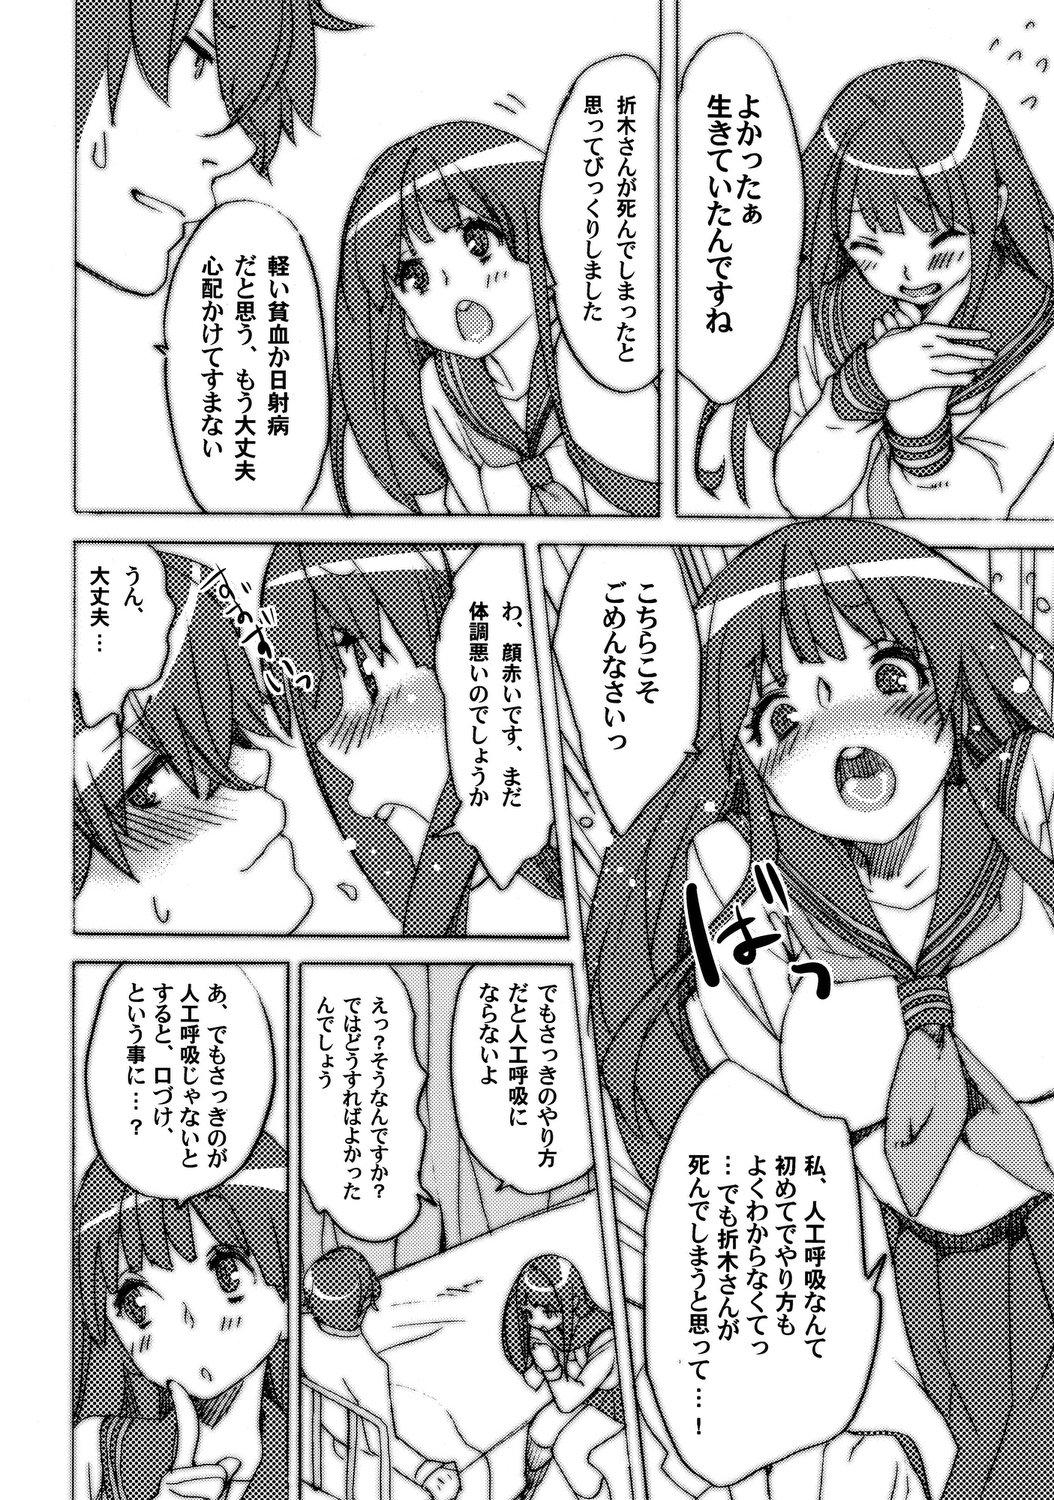 Panties Nikumaki Onigiri Tare koime - Hyouka Retro - Page 7